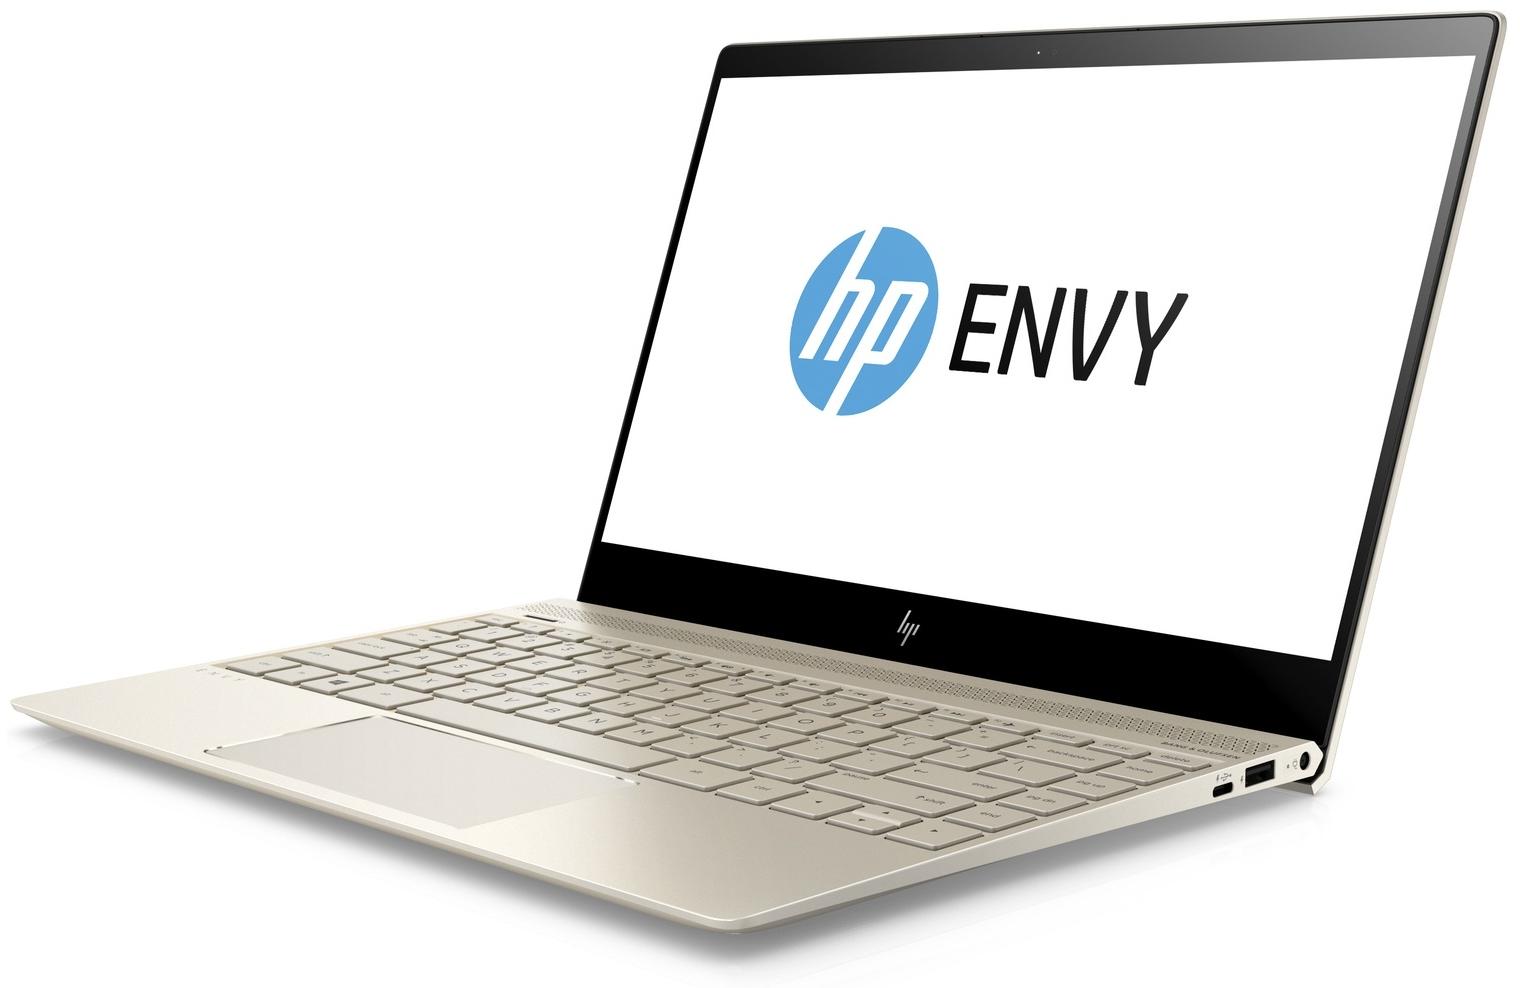   HP Envy 13-ad009ur (1WS55EA)  1